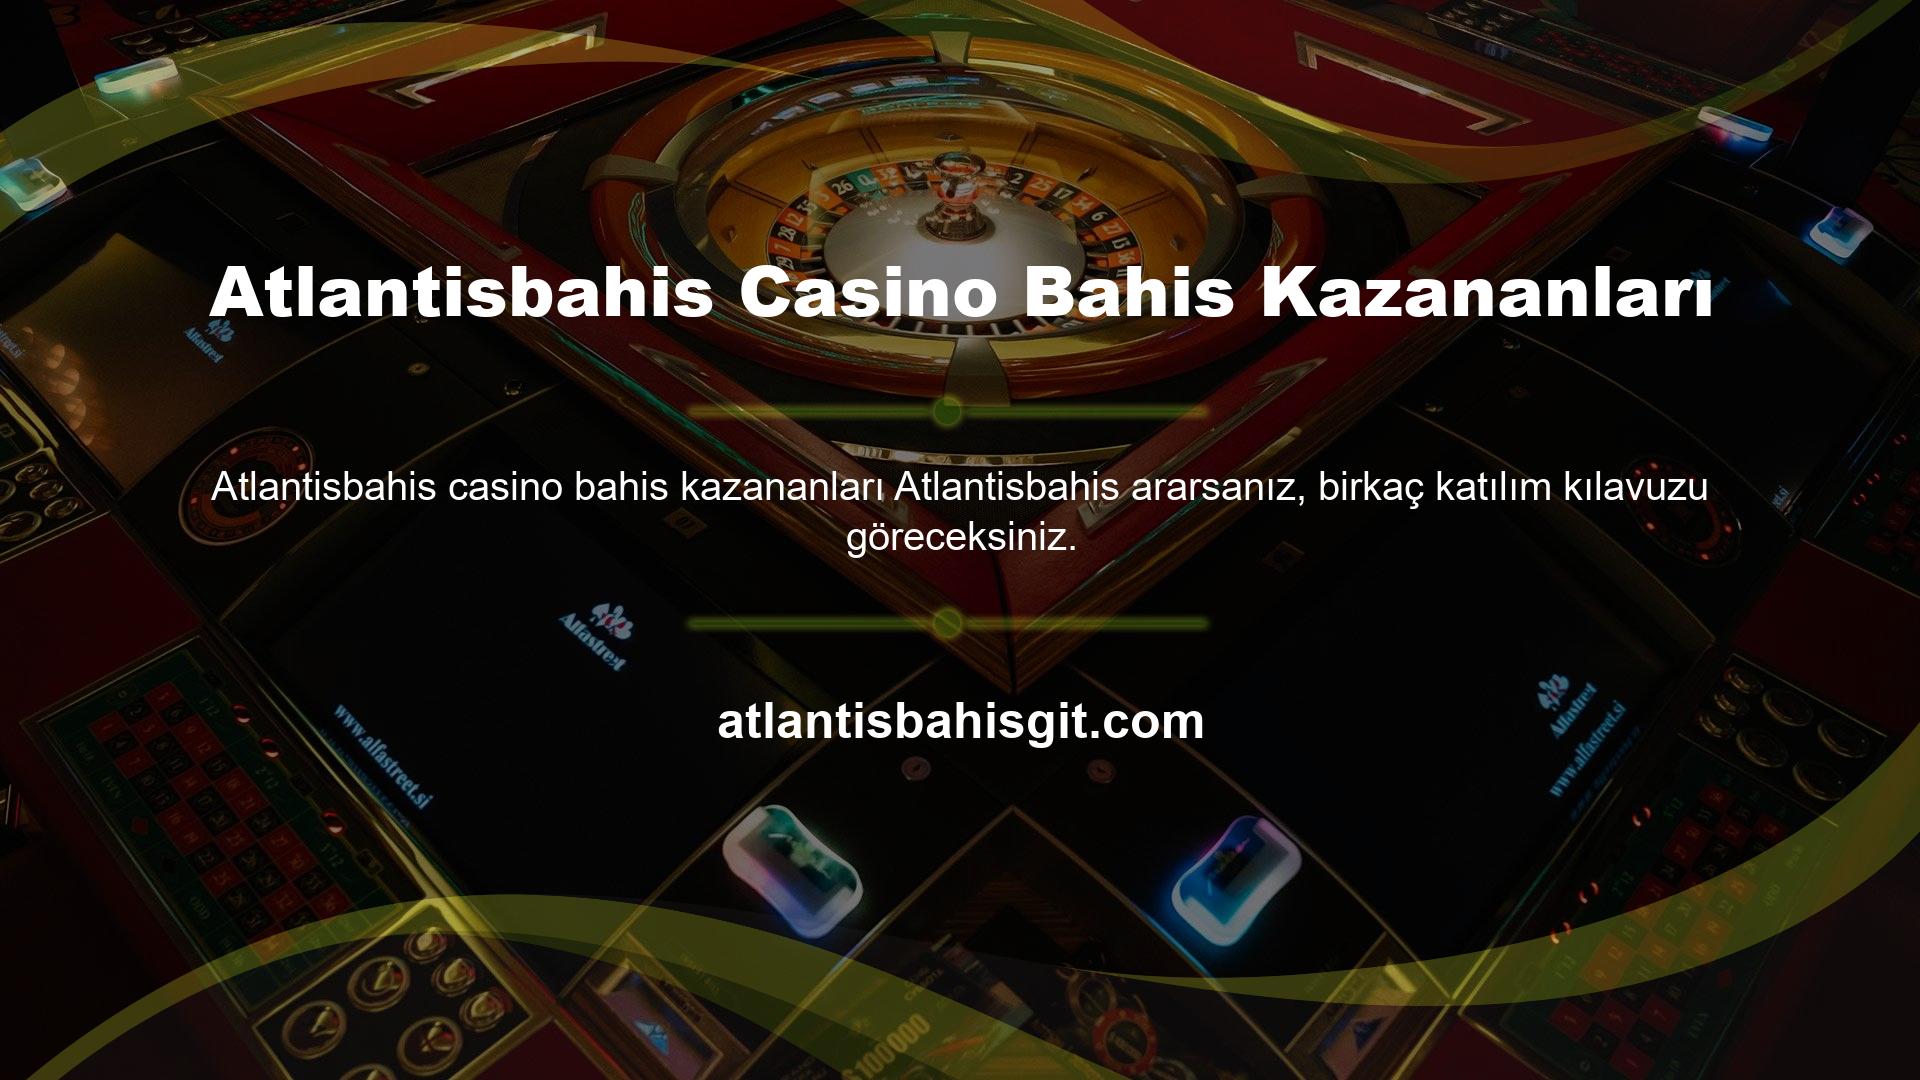 Atlantisbahis Casino Bahis Kazananları